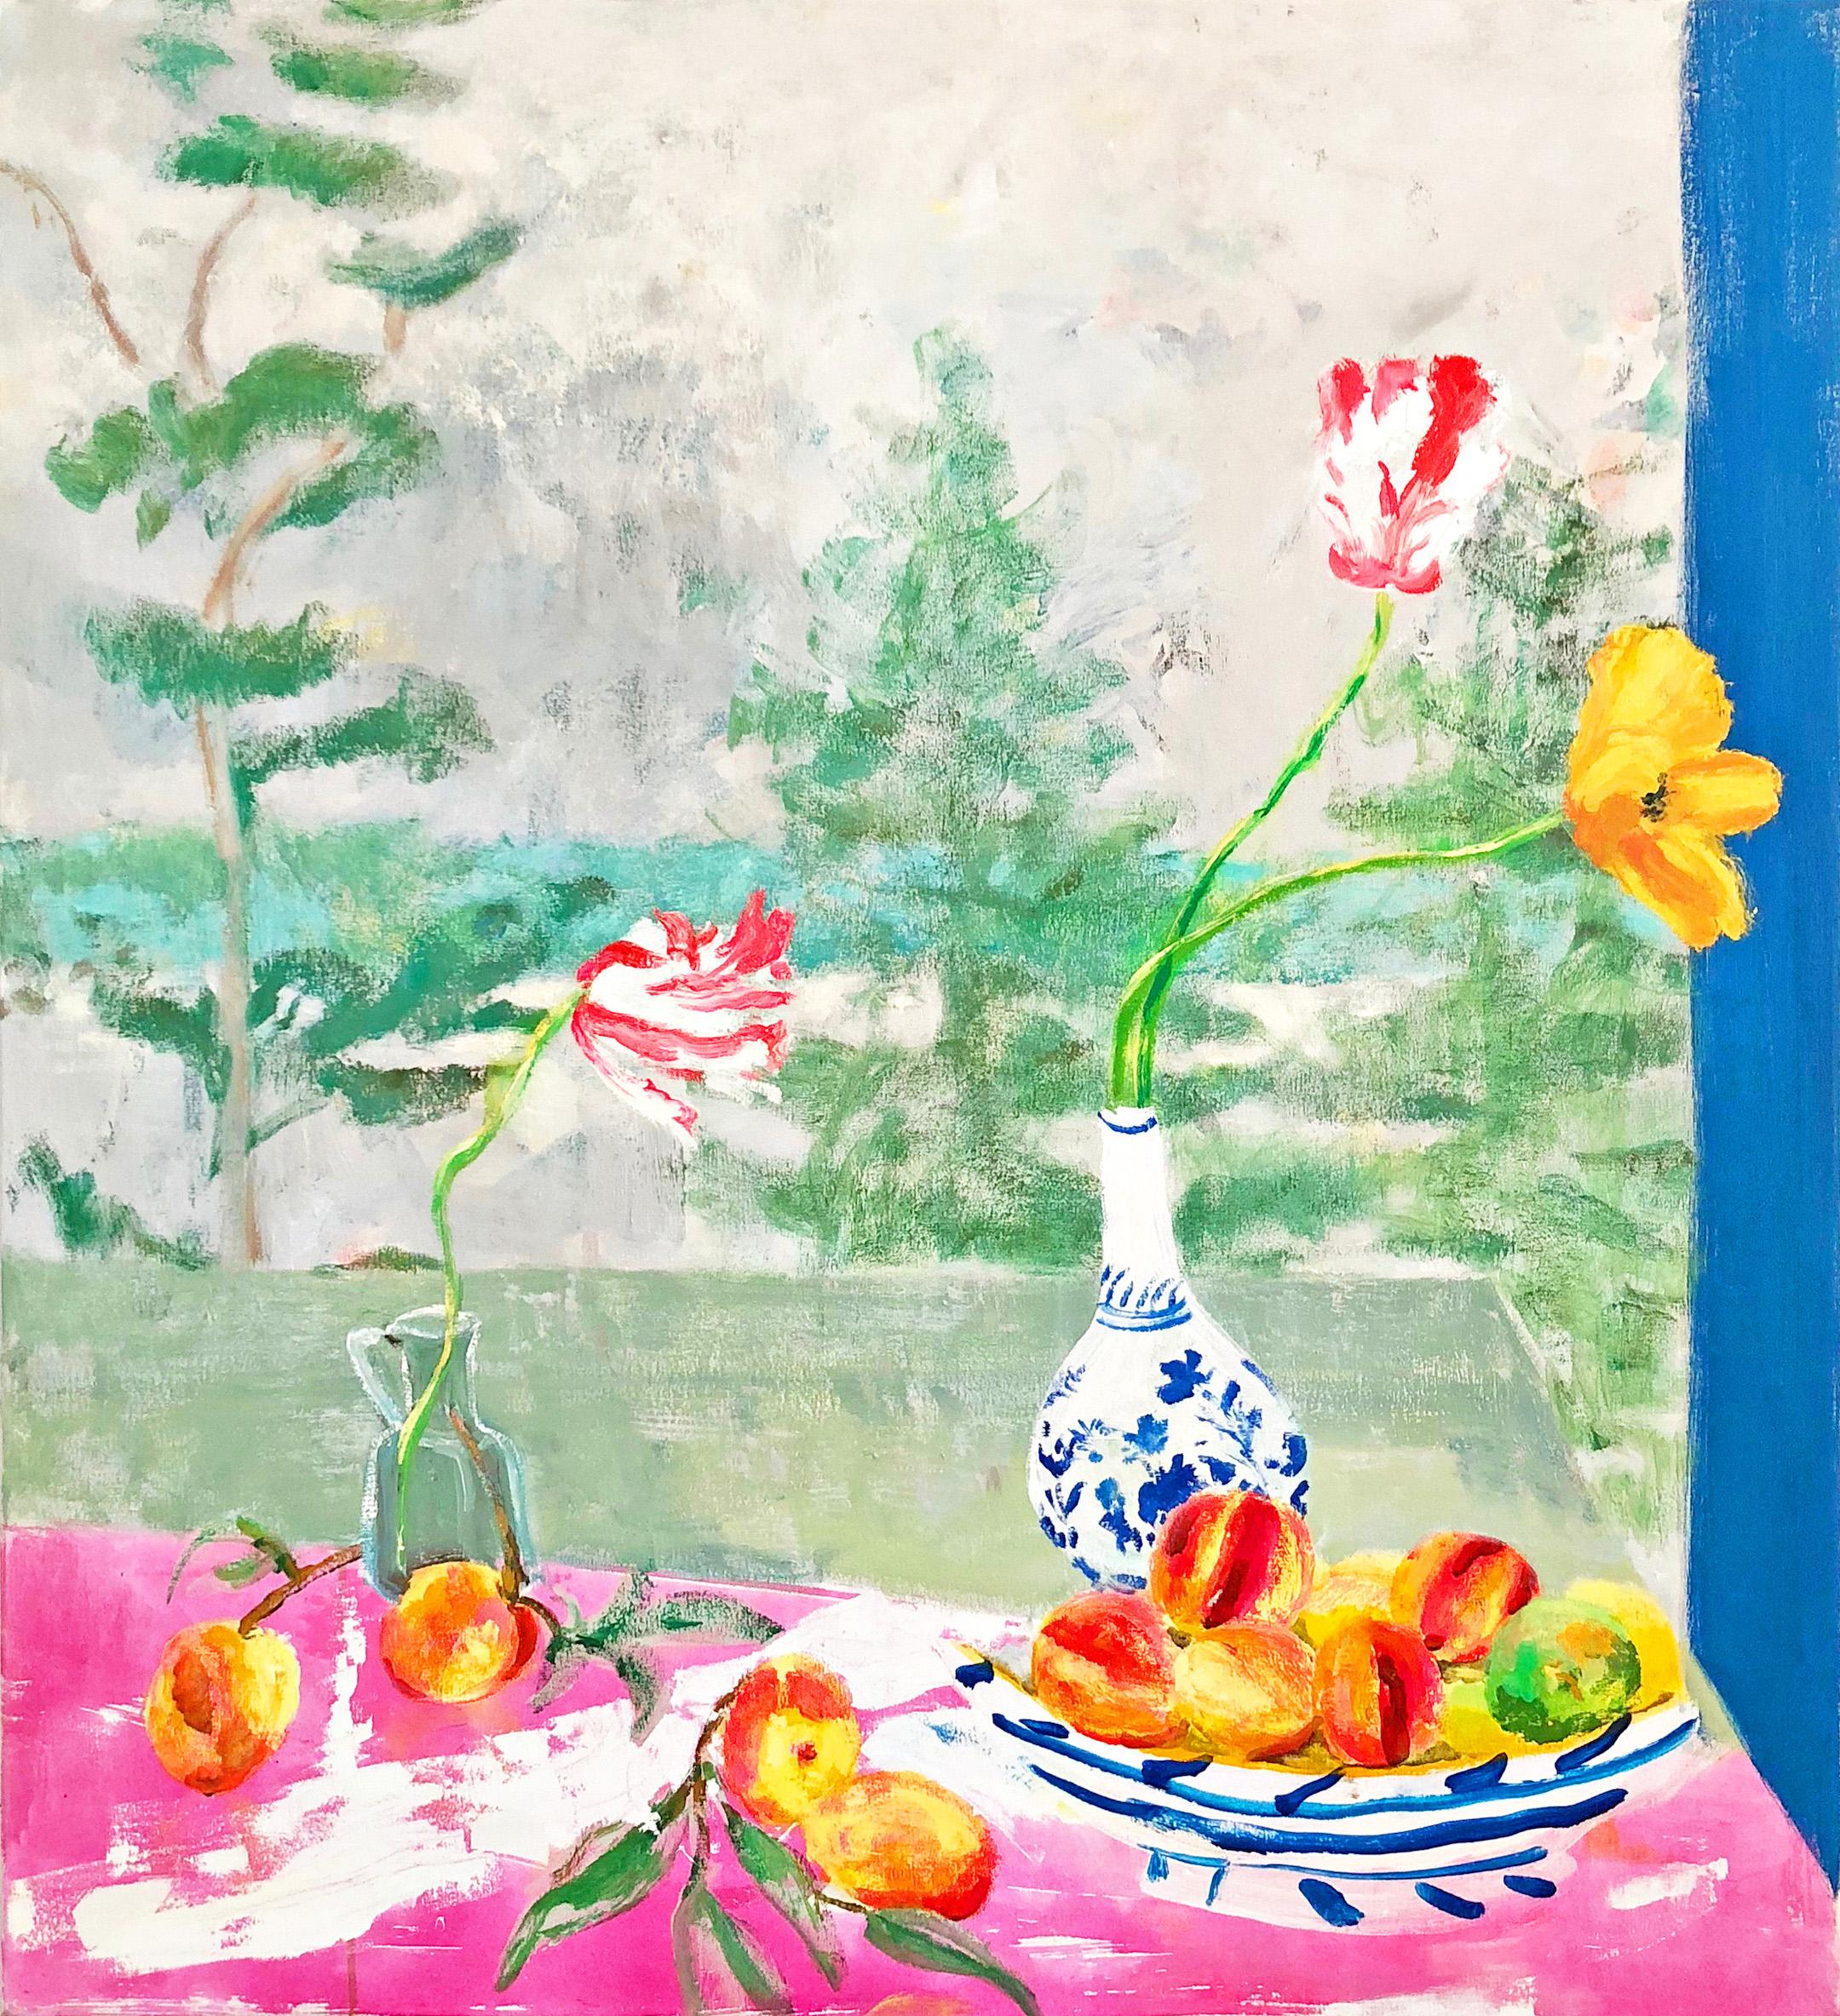 Melanie Parke Landscape Painting – Pfirsich, grüne Kiefernholzbäume, rosa Tulpen, botanische, Obst- und Seelandschaft